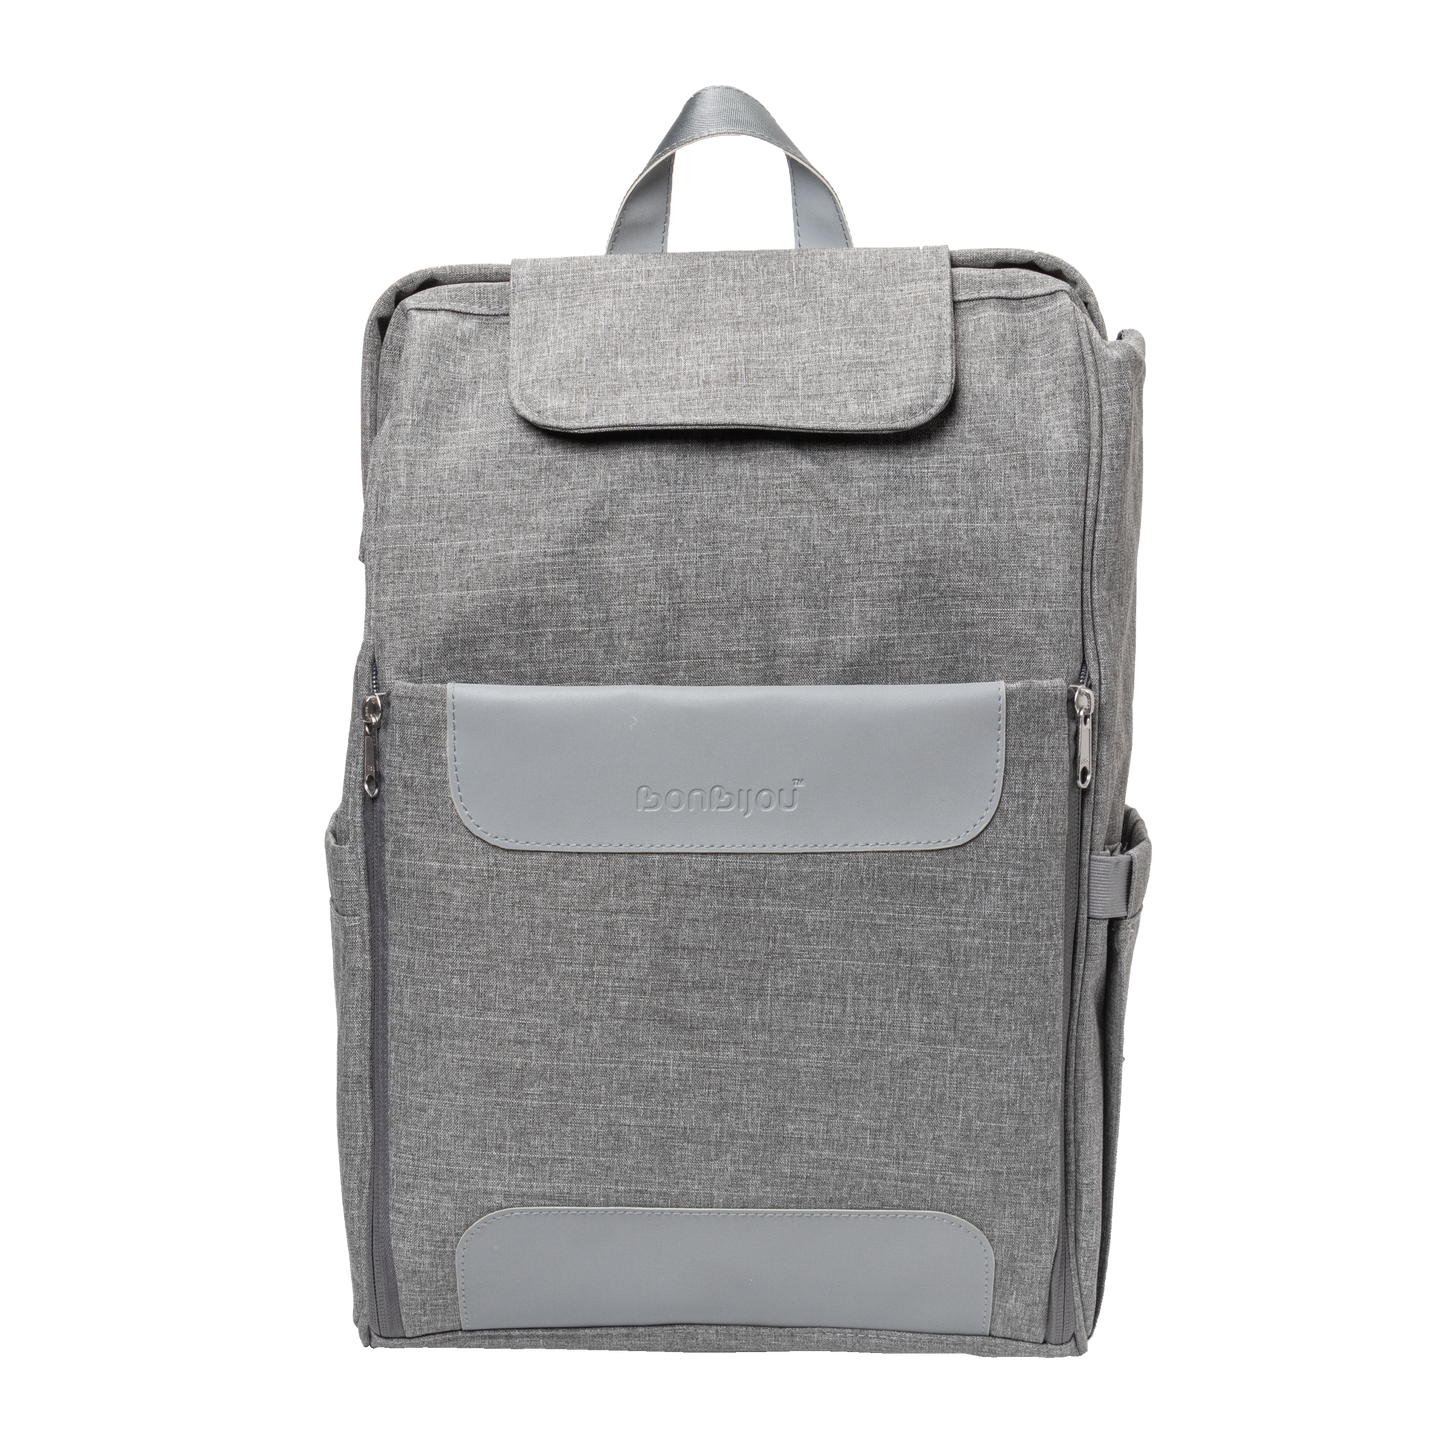 Bonbijou Diaper Bag Backpack (The Contemporary Pack)